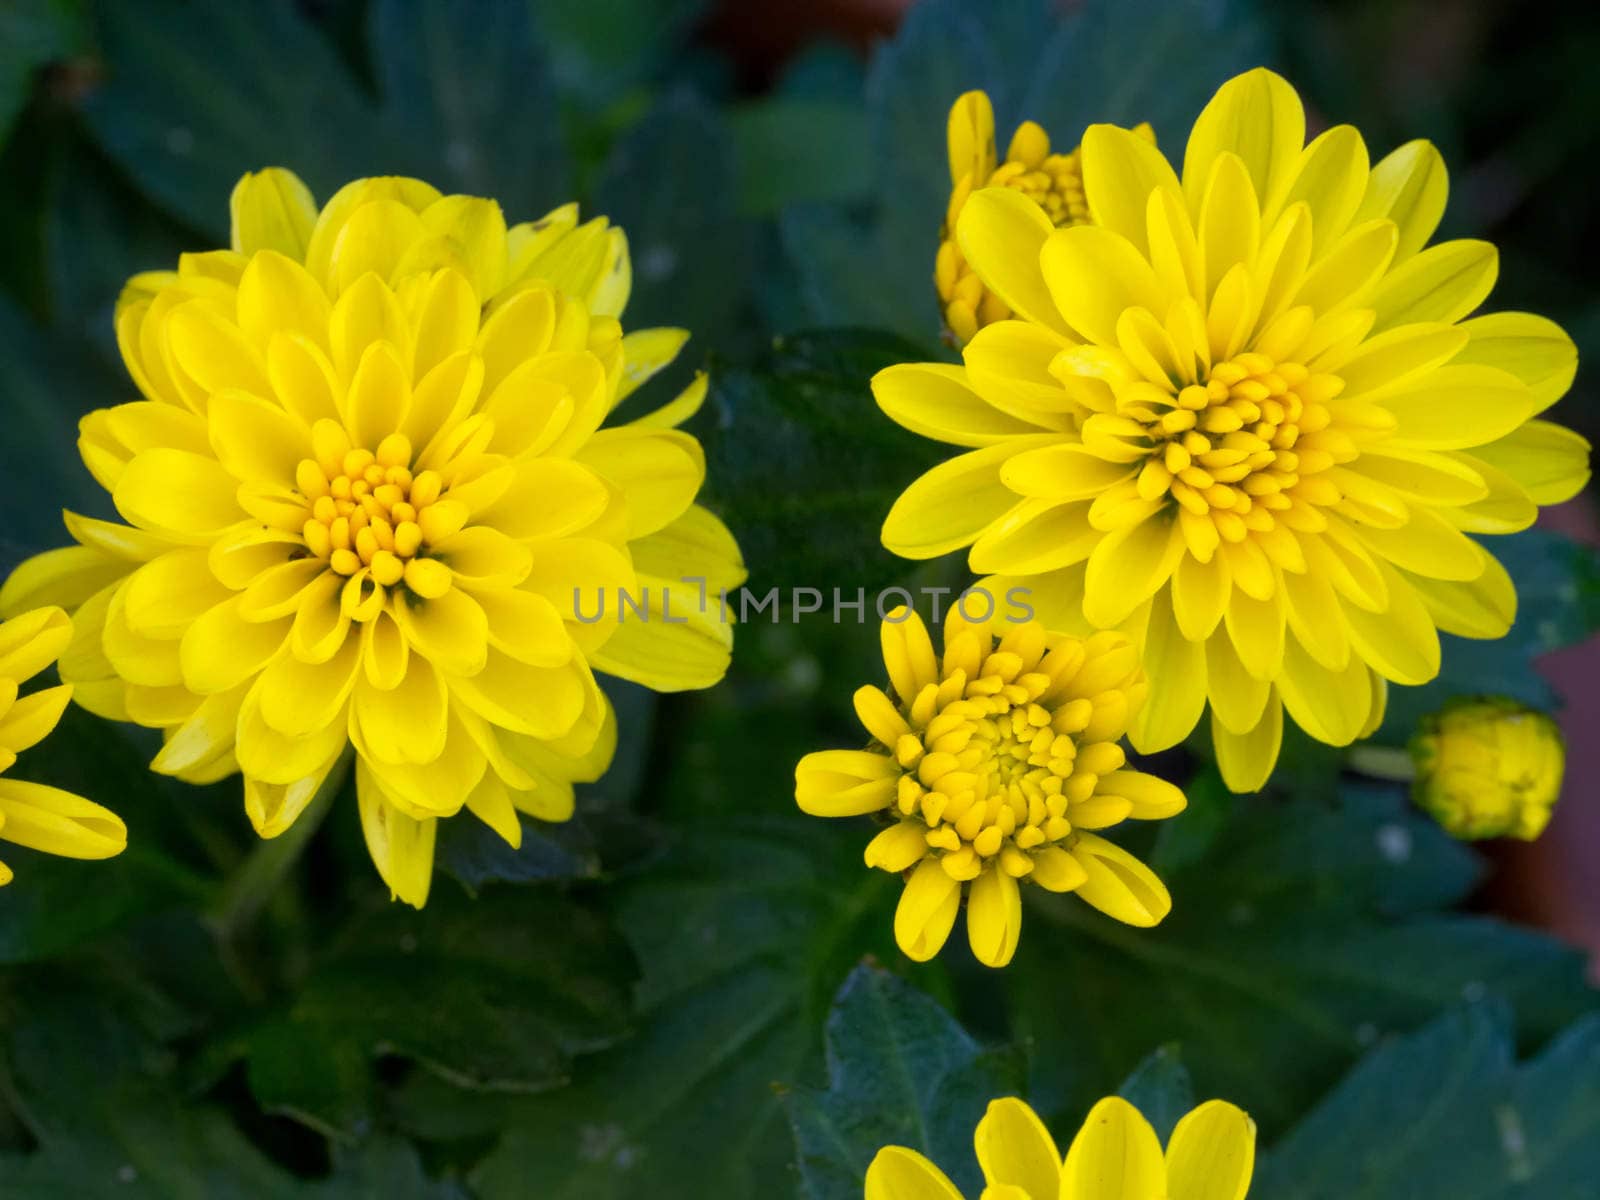 Yellow Chrysanthemum Daisy Close-up Shot by mroz